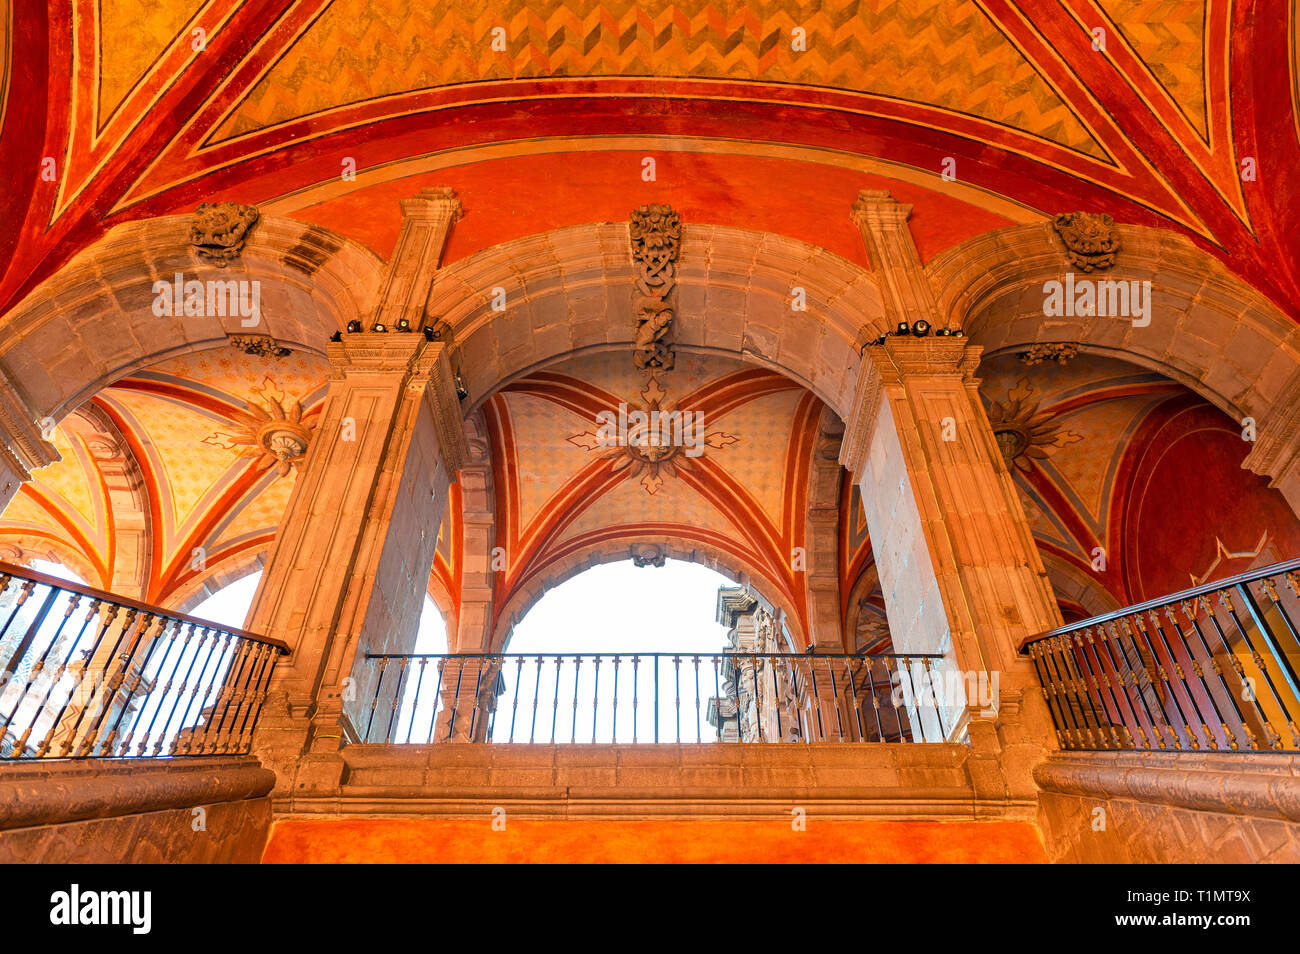 L'architecture de style colonial avec des arcs et des colonnes dans la zone publique de l'Art Museum de la ville de Queretaro, au Mexique. Banque D'Images